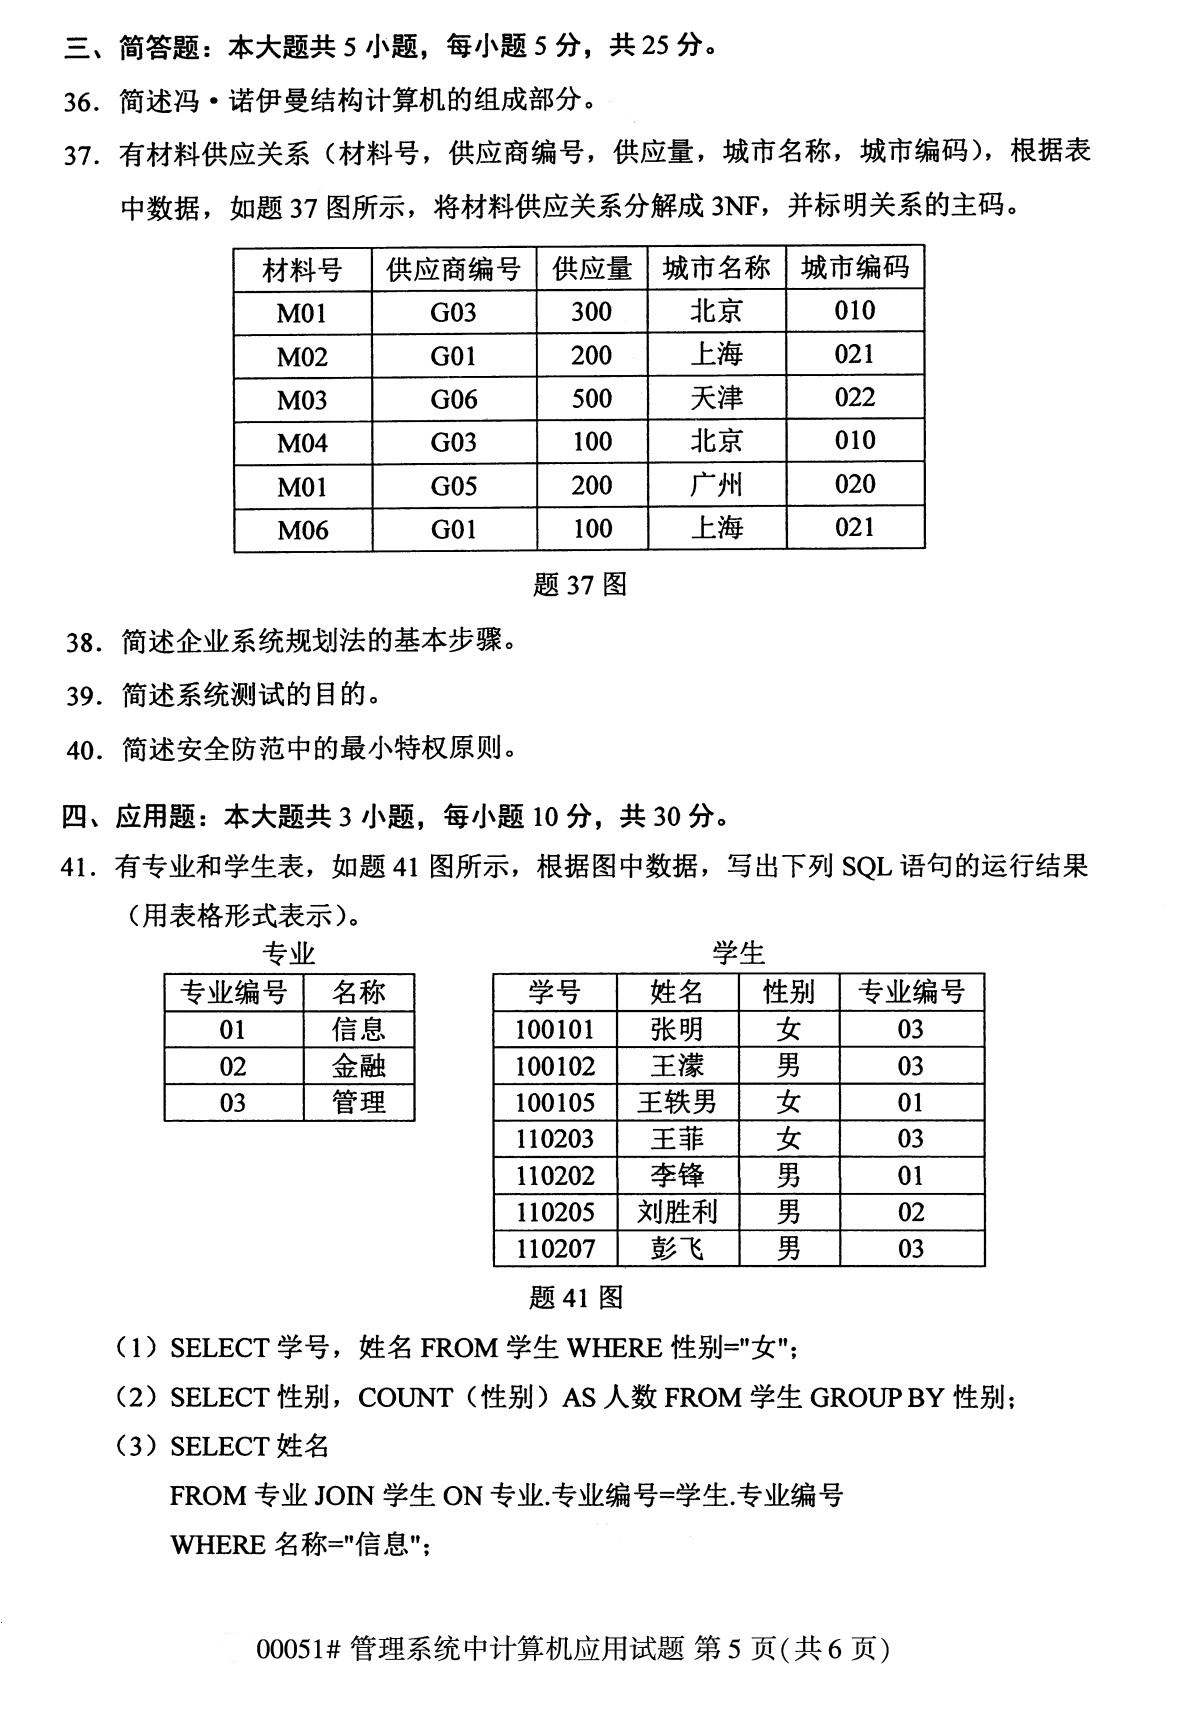 2020年8月福建省自学考试本科管理系统中计算机应用真题(图5)